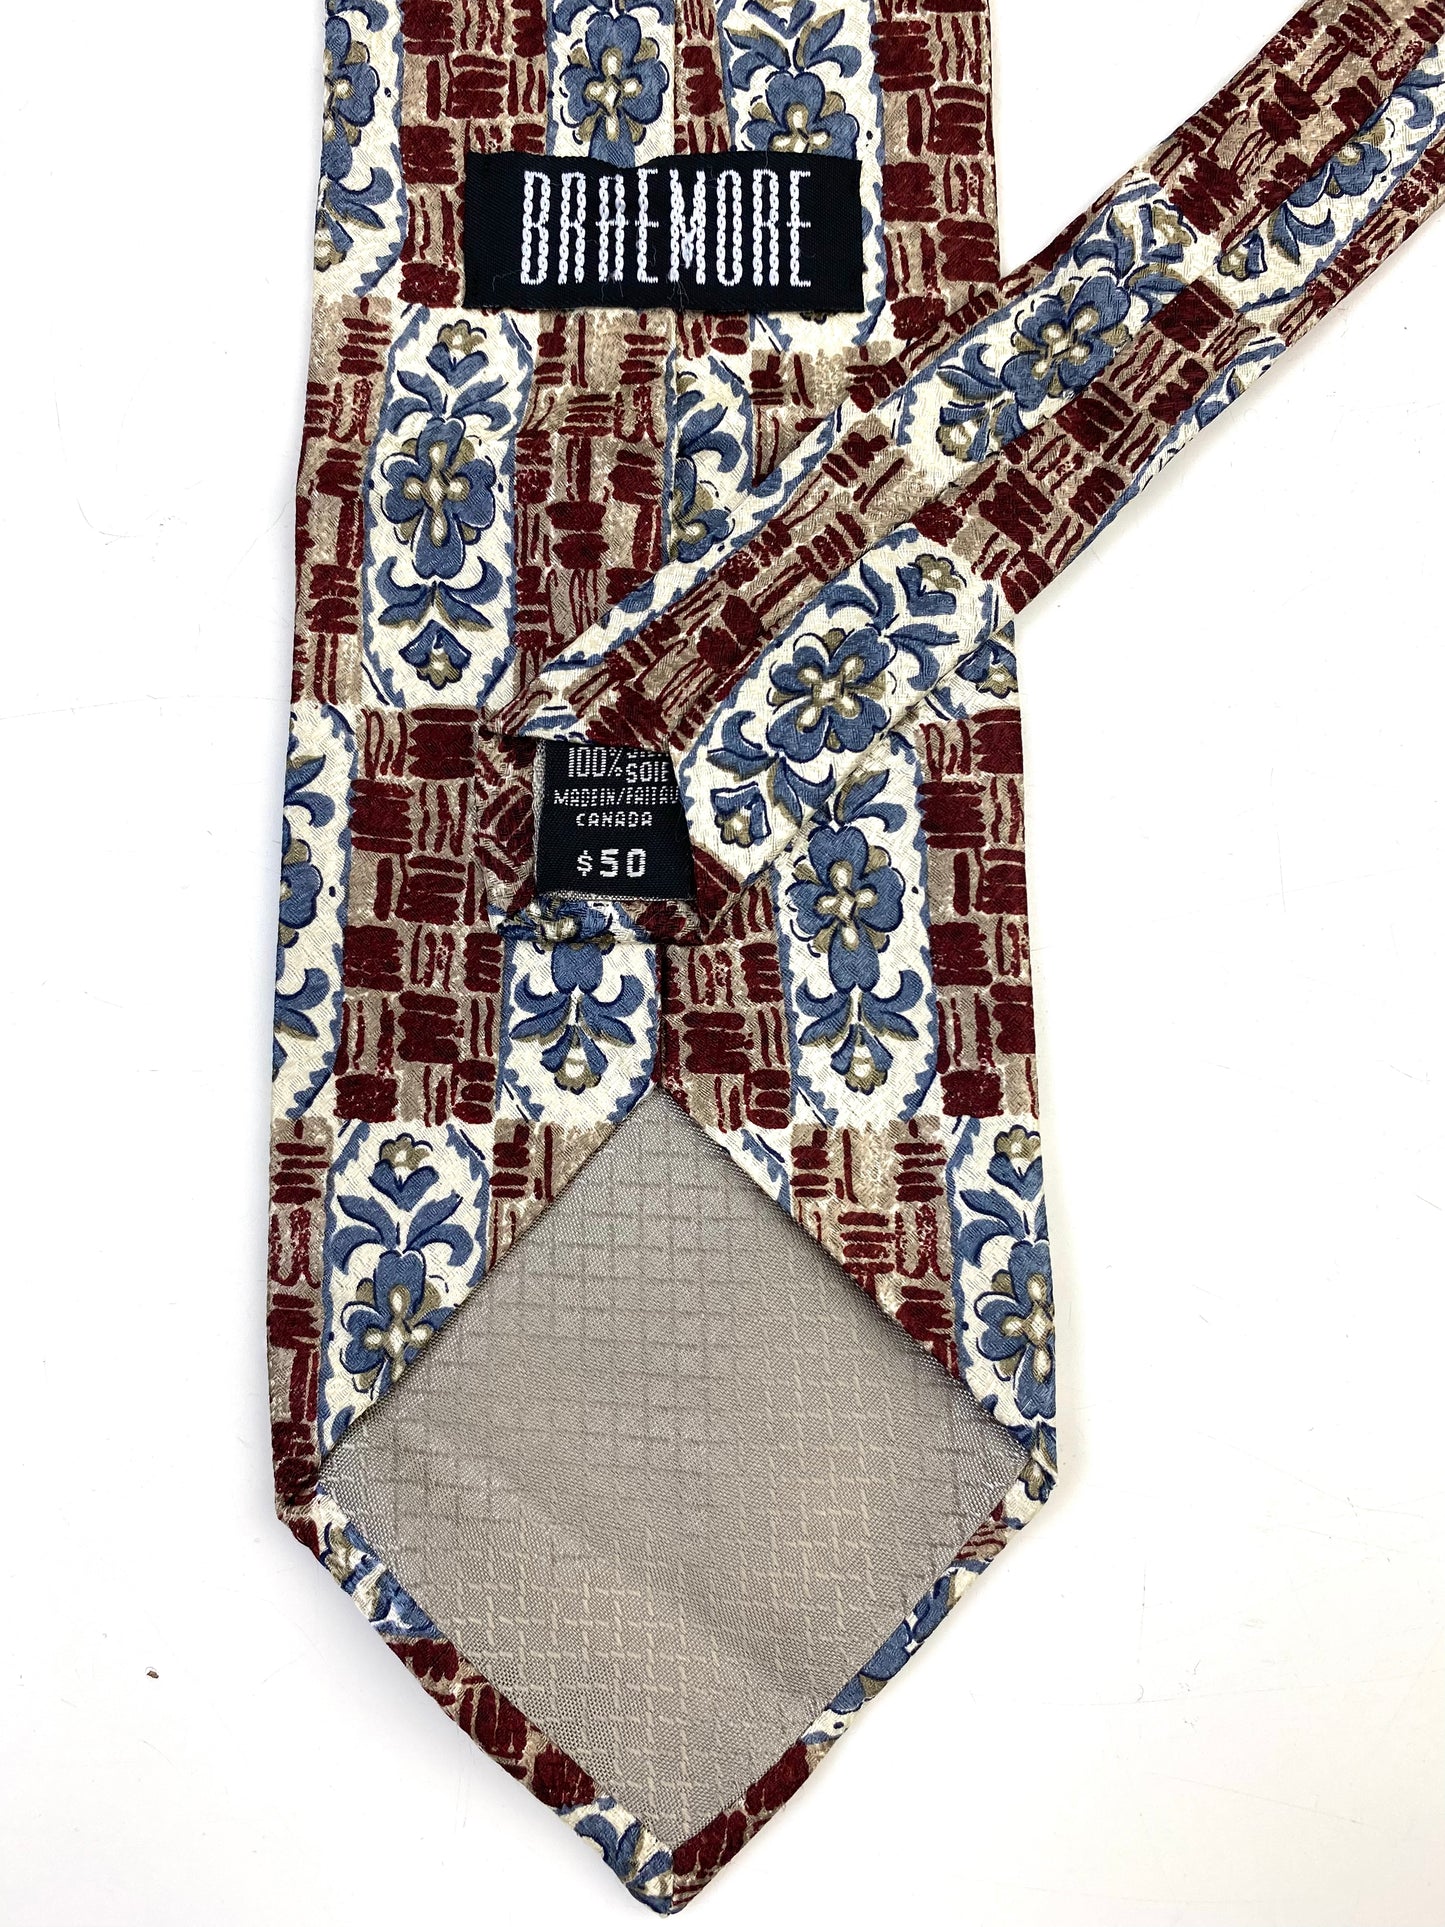 90s Deadstock Silk Necktie, Men's Vintage Wine/ Blue Floral Decal Pattern Tie, NOS